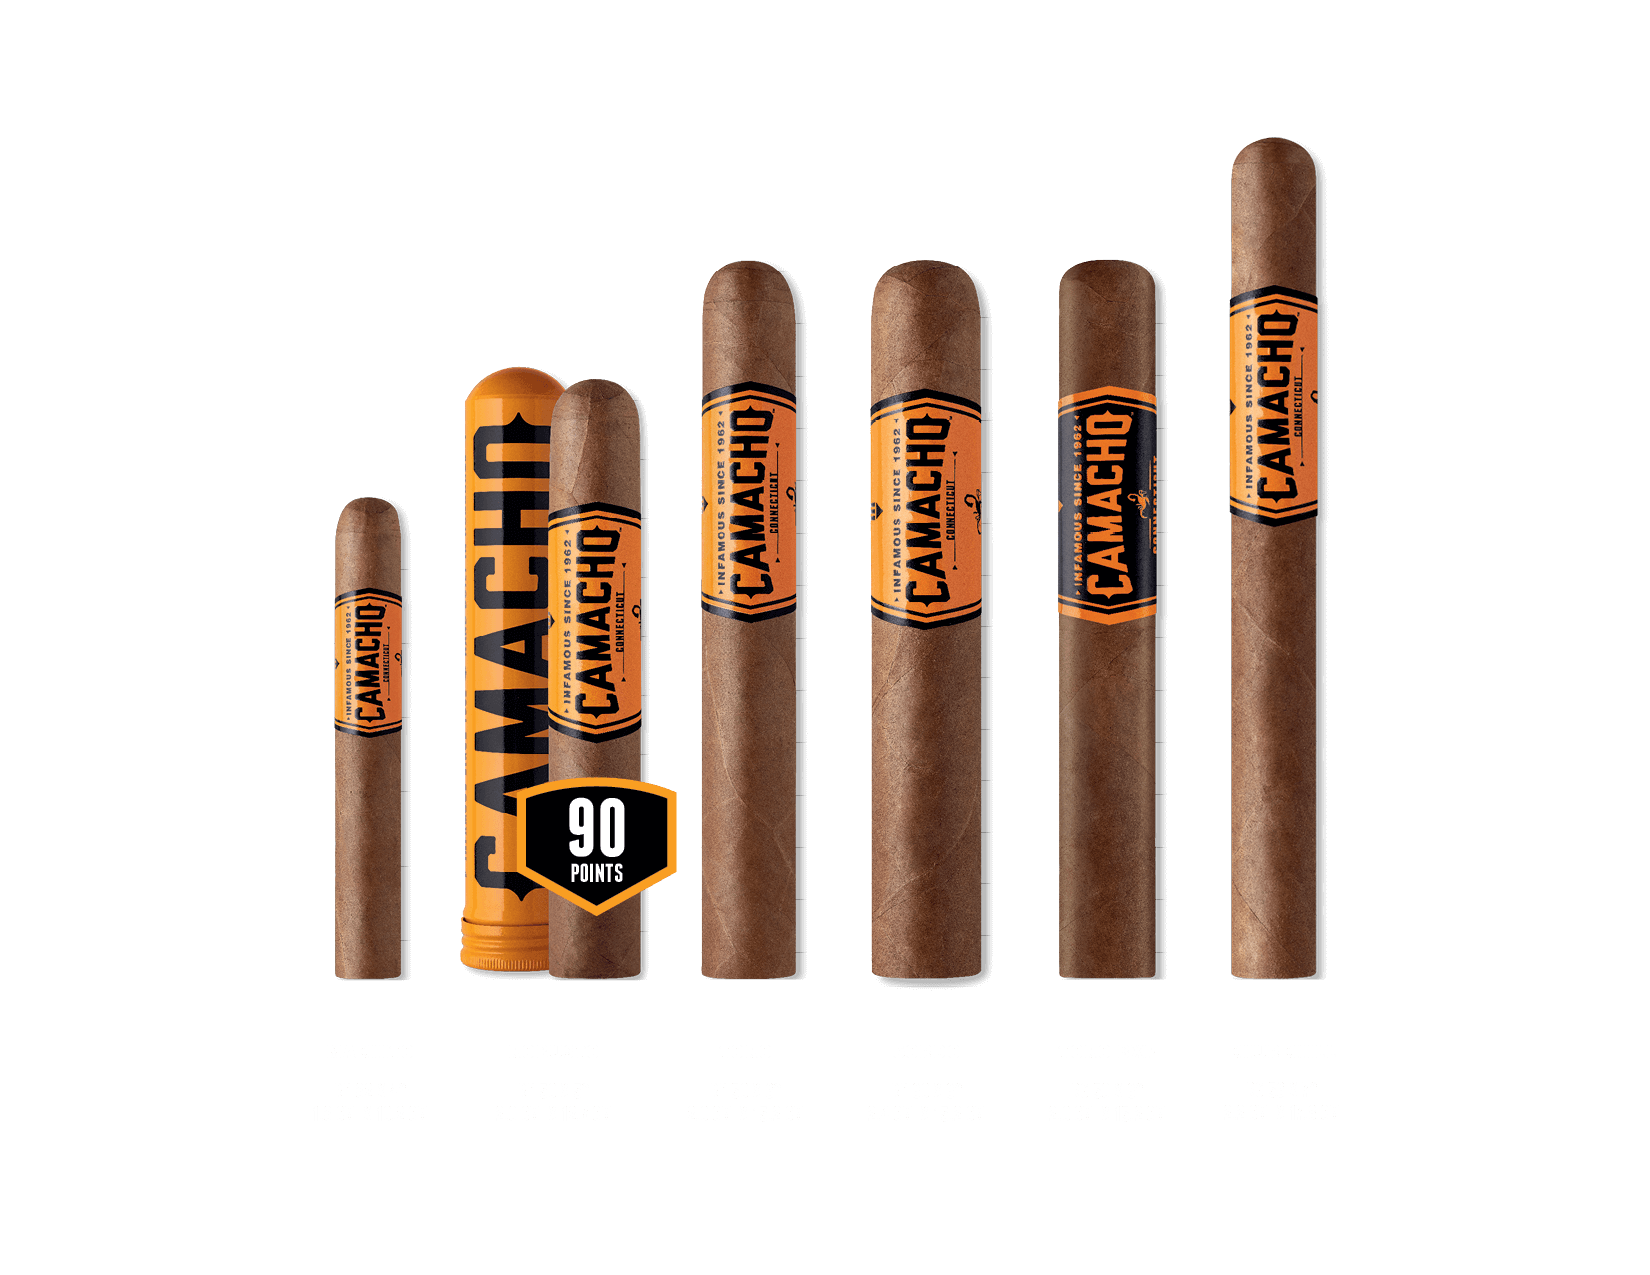 Camacho Connecticut Cigar Line Up - Machito - Robusto - Toro - Gordo (60x6) - Toro Box Pressed - Churchill